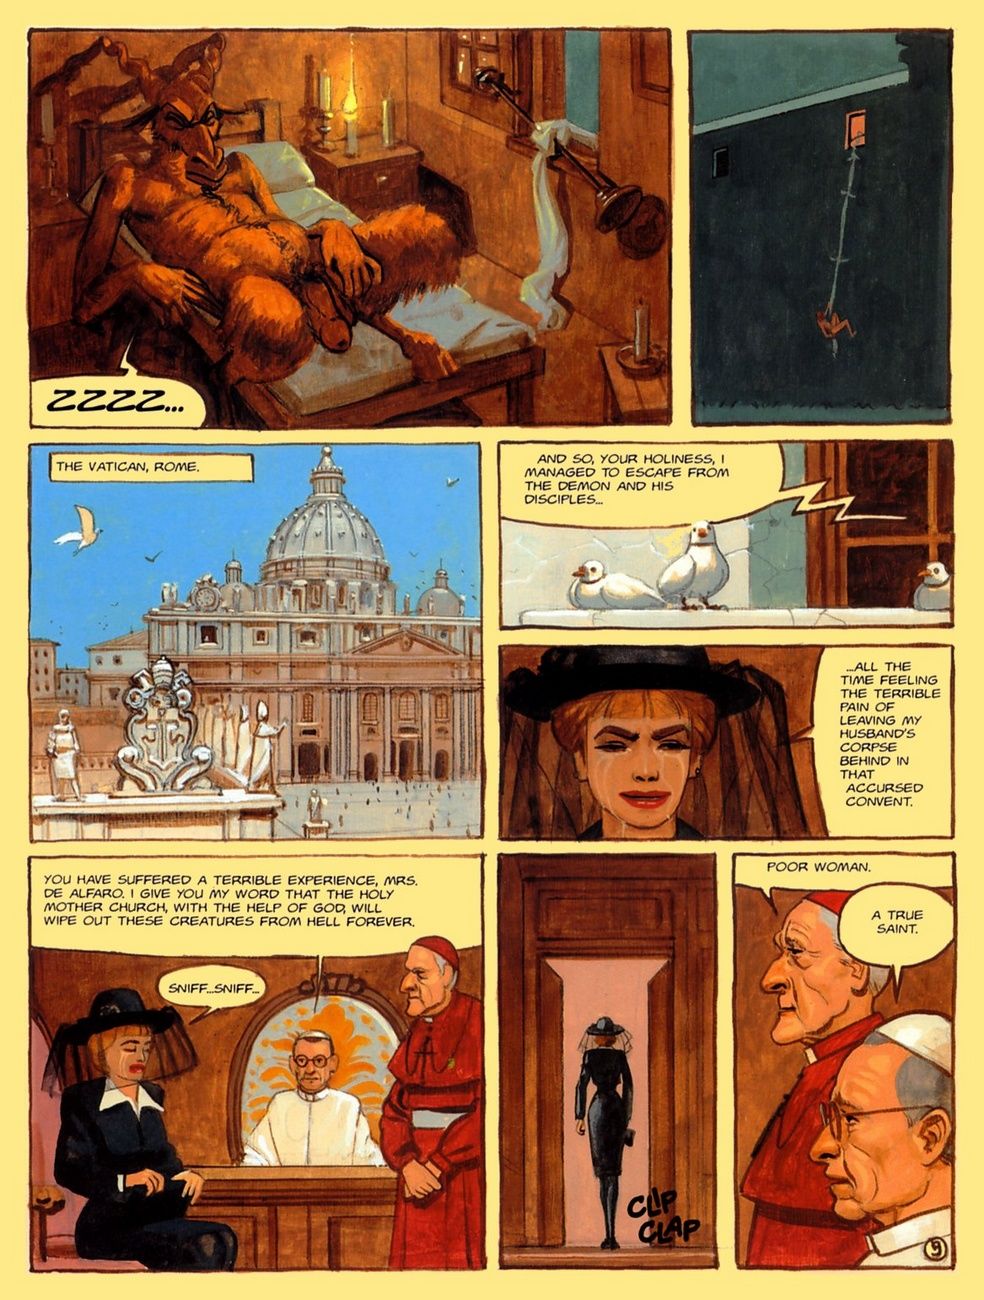 il convento di inferno parte 4 page 1